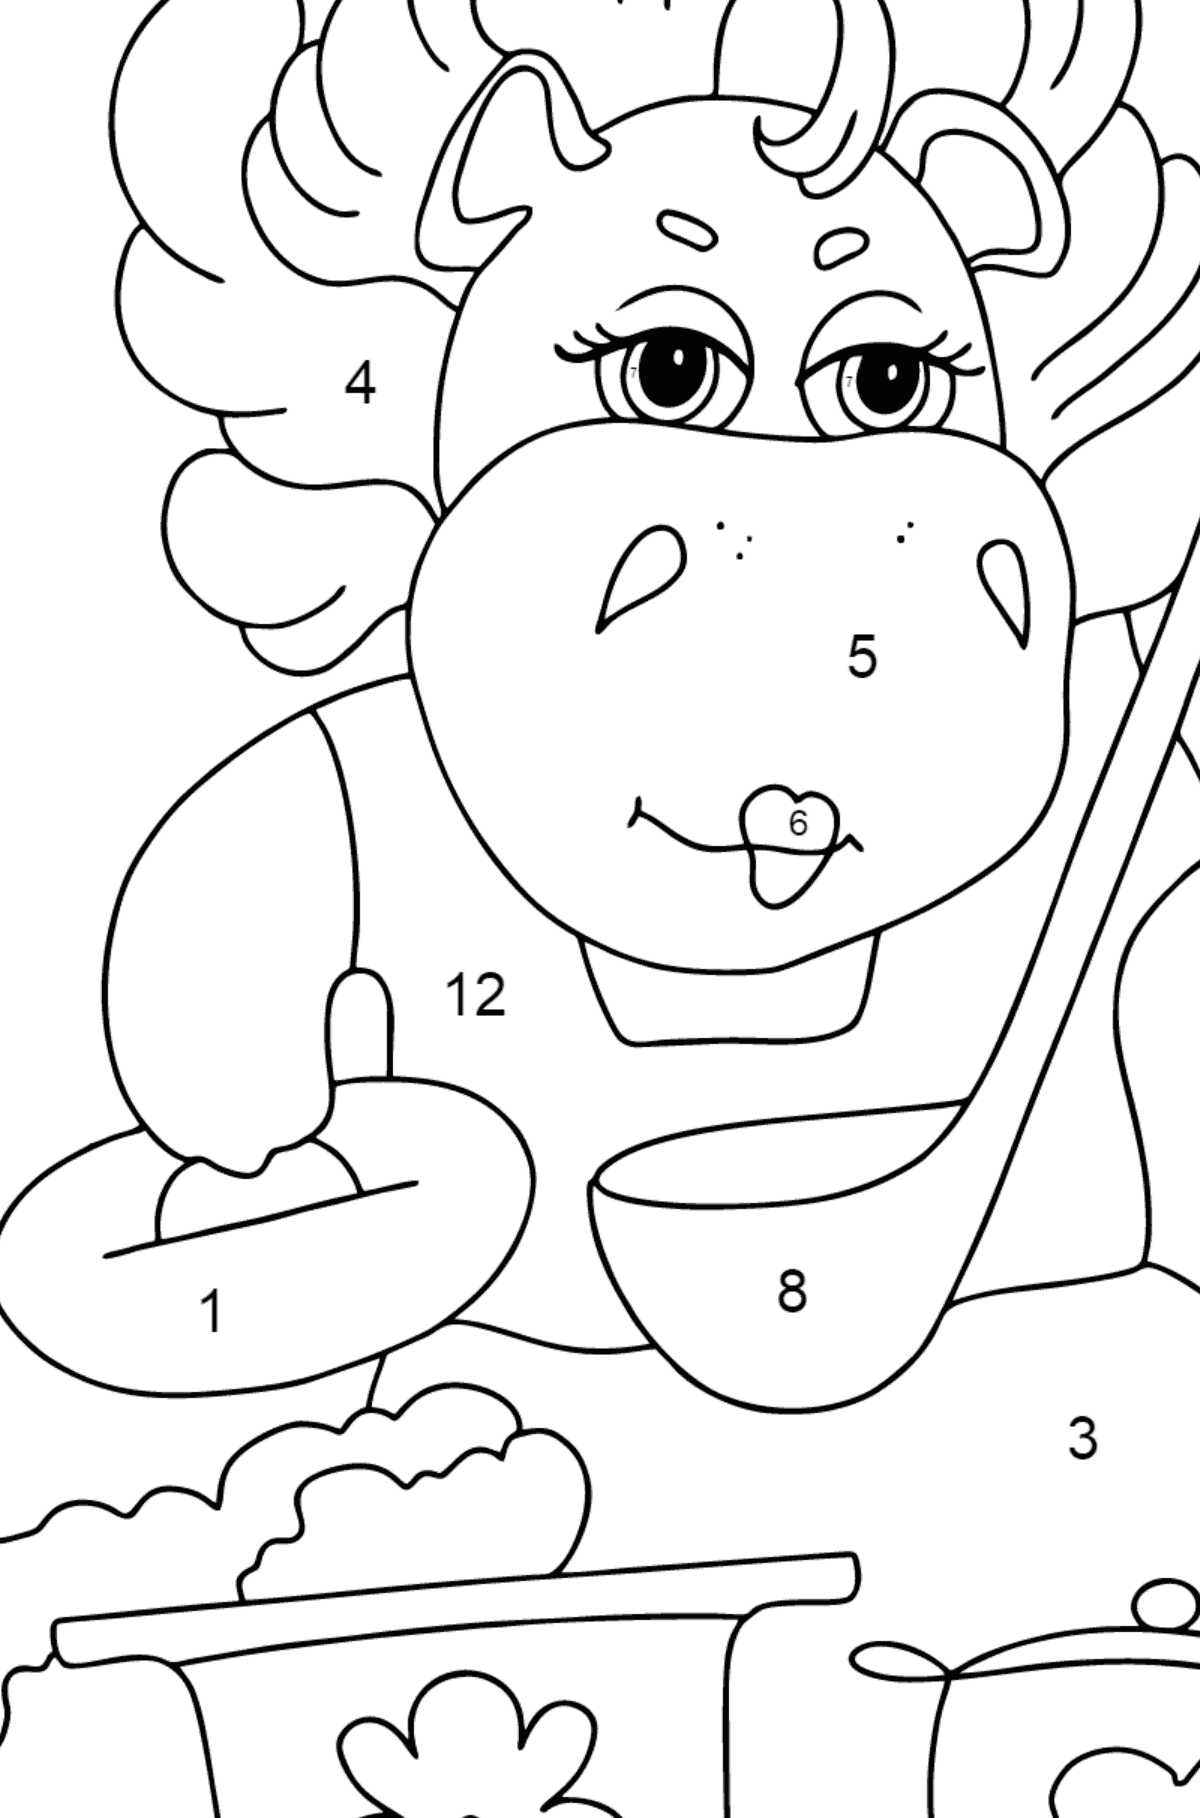 Dibujo de hipopótamo mágico (simple) para colorear - Colorear por Números para Niños